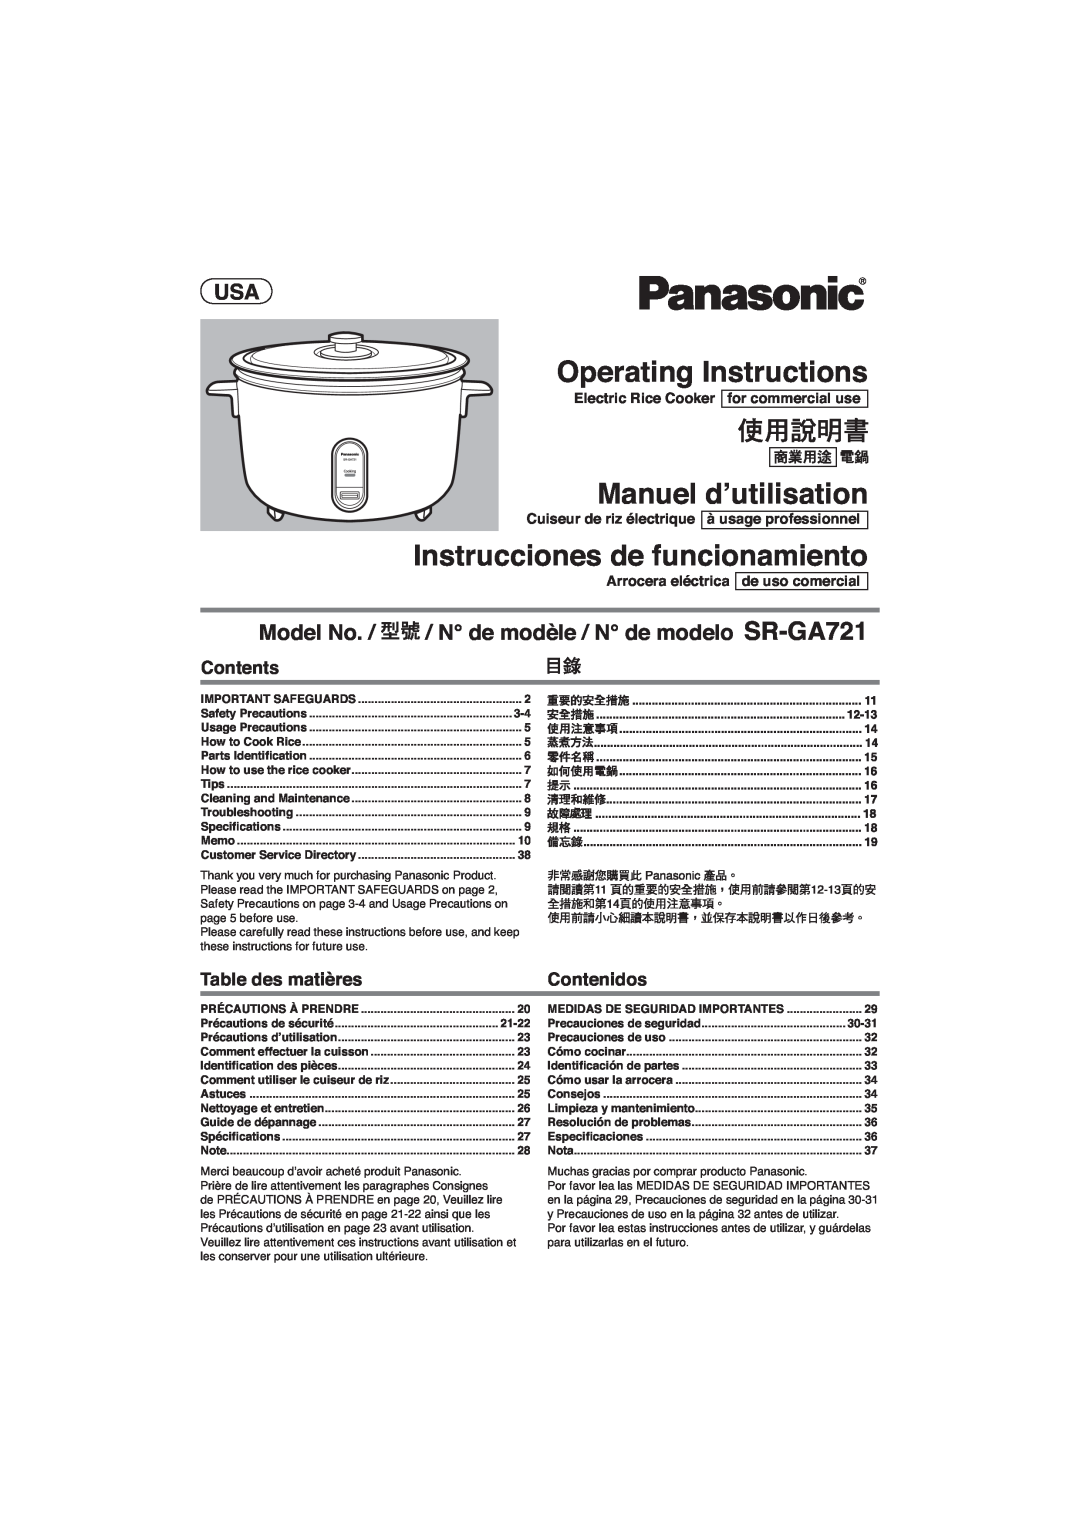 Panasonic SR-GA721 manuel dutilisation Operating Instructions, Manuel d’utilisation, Instrucciones de funcionamiento 